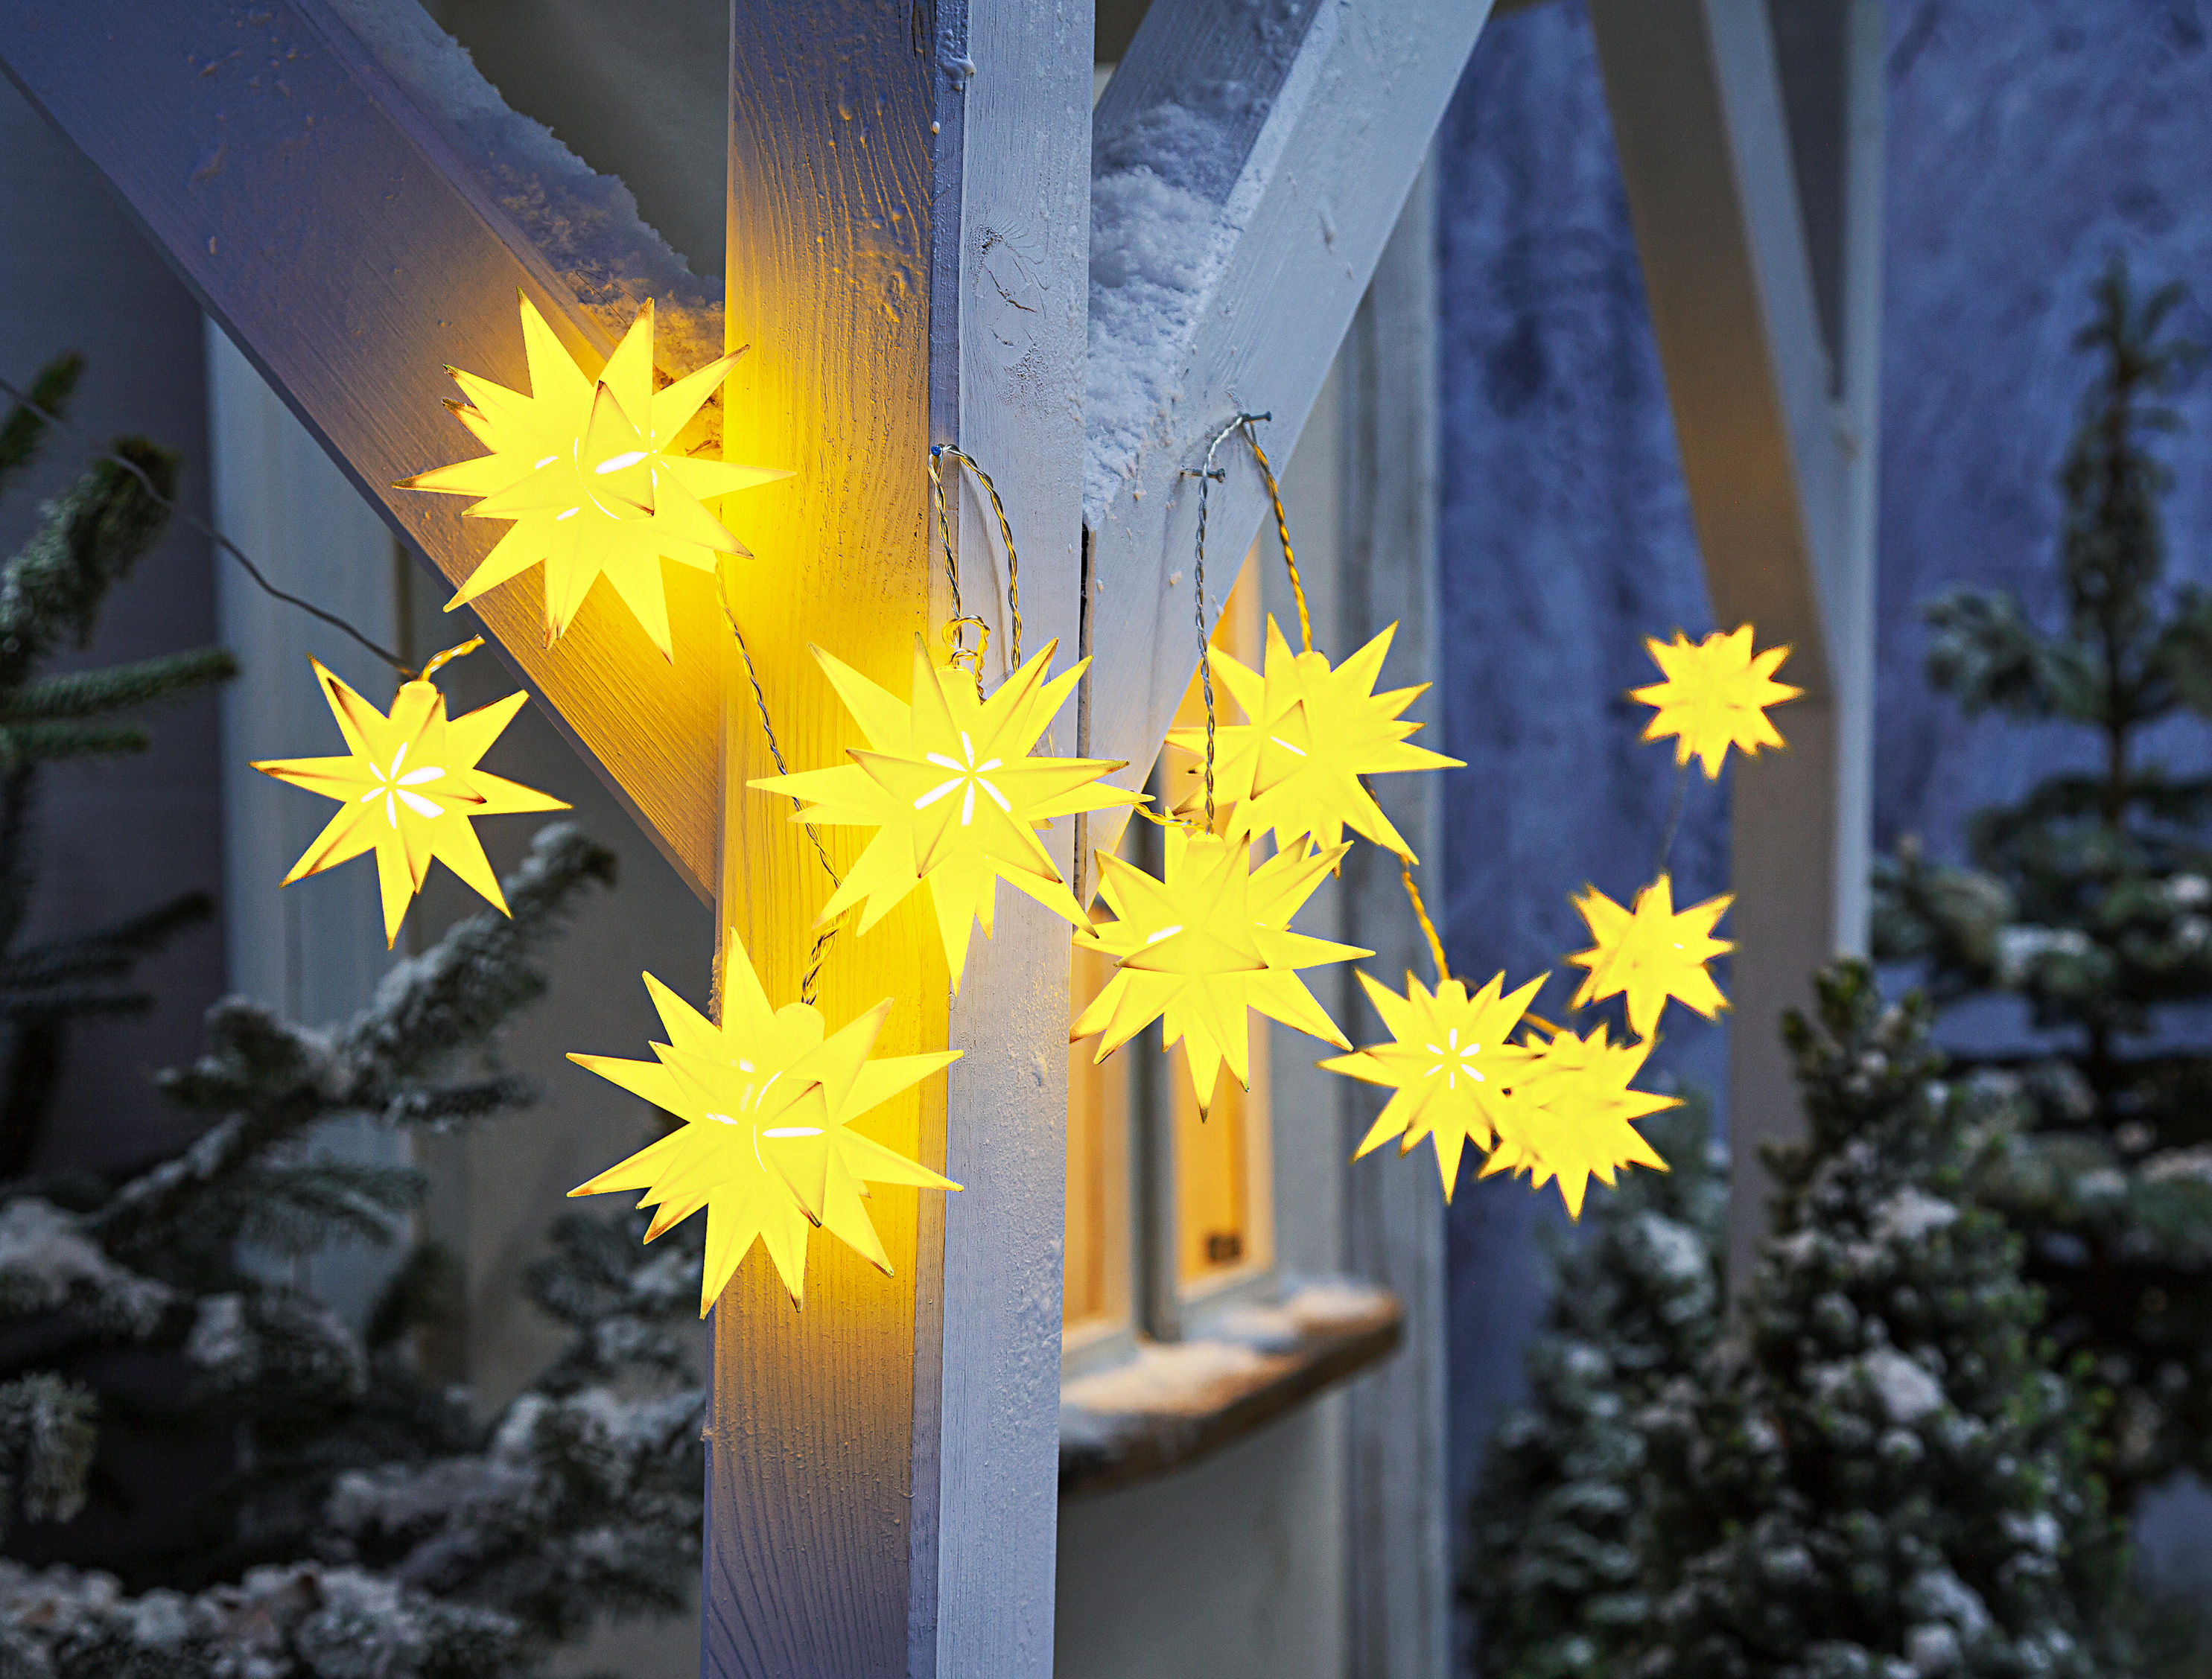 LED-Lichterkette Weihnachtsstern Farbe: gelb | Weltbild.de